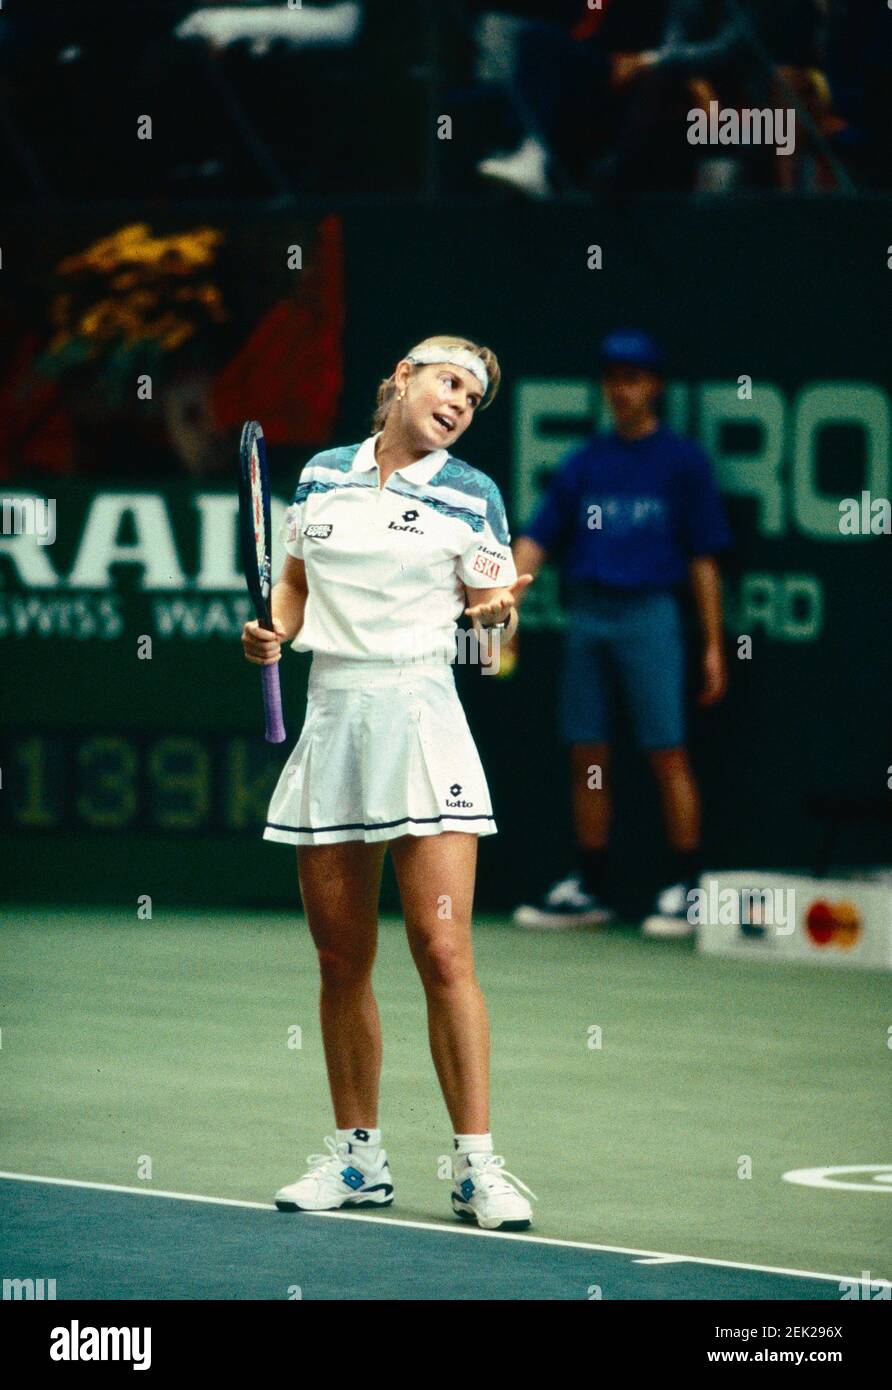 German tennis player Anke Huber, European Indoors, Zurich, Switzerland 1996  Stock Photo - Alamy